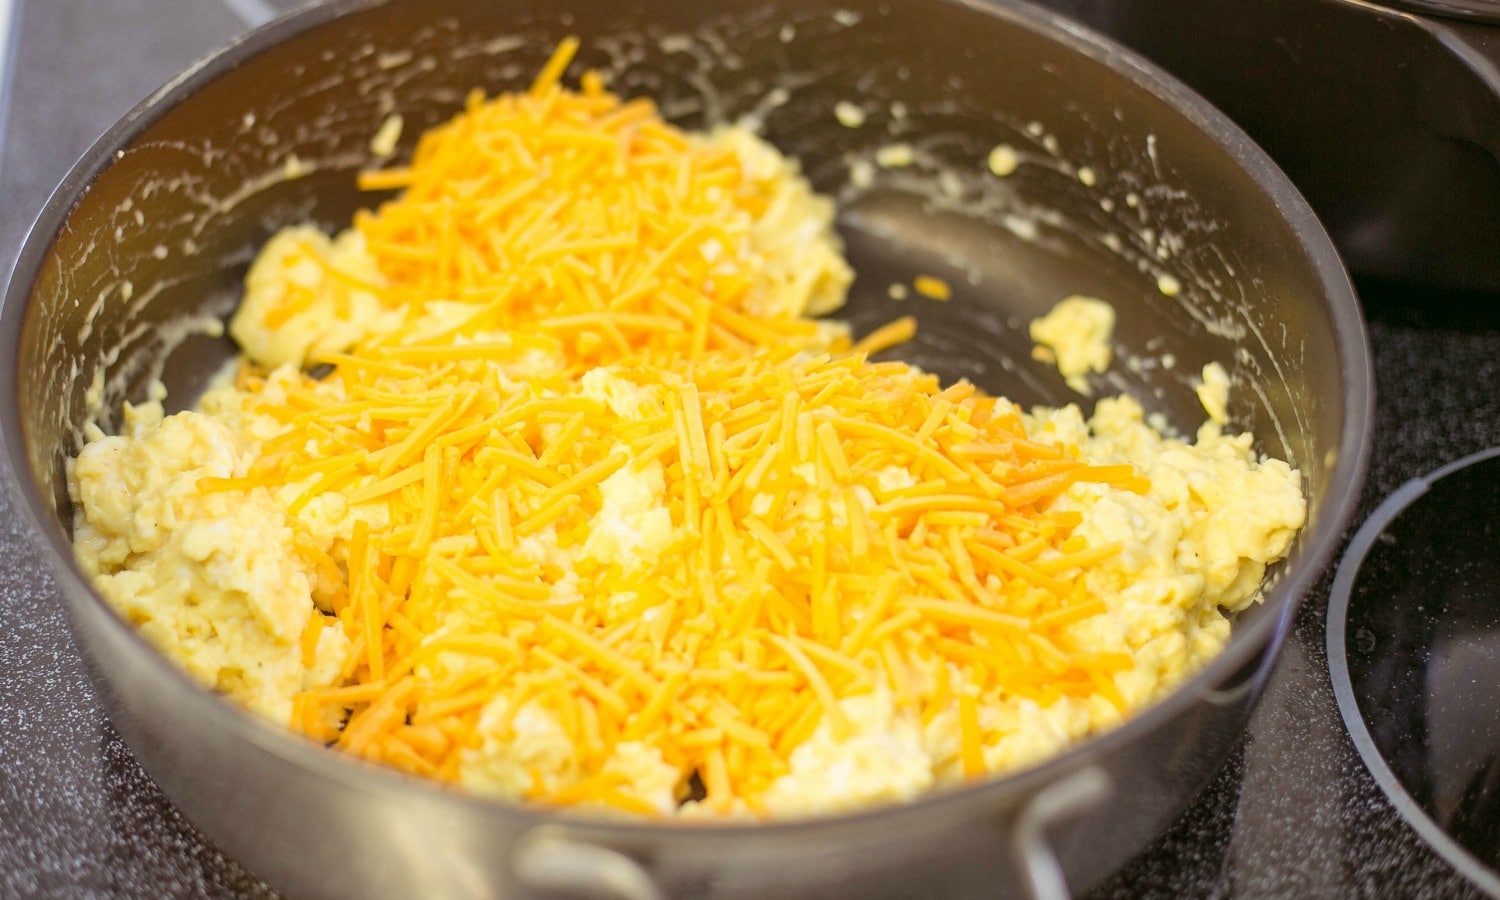 Add shredded cheddar cheese to the scrambled eggs